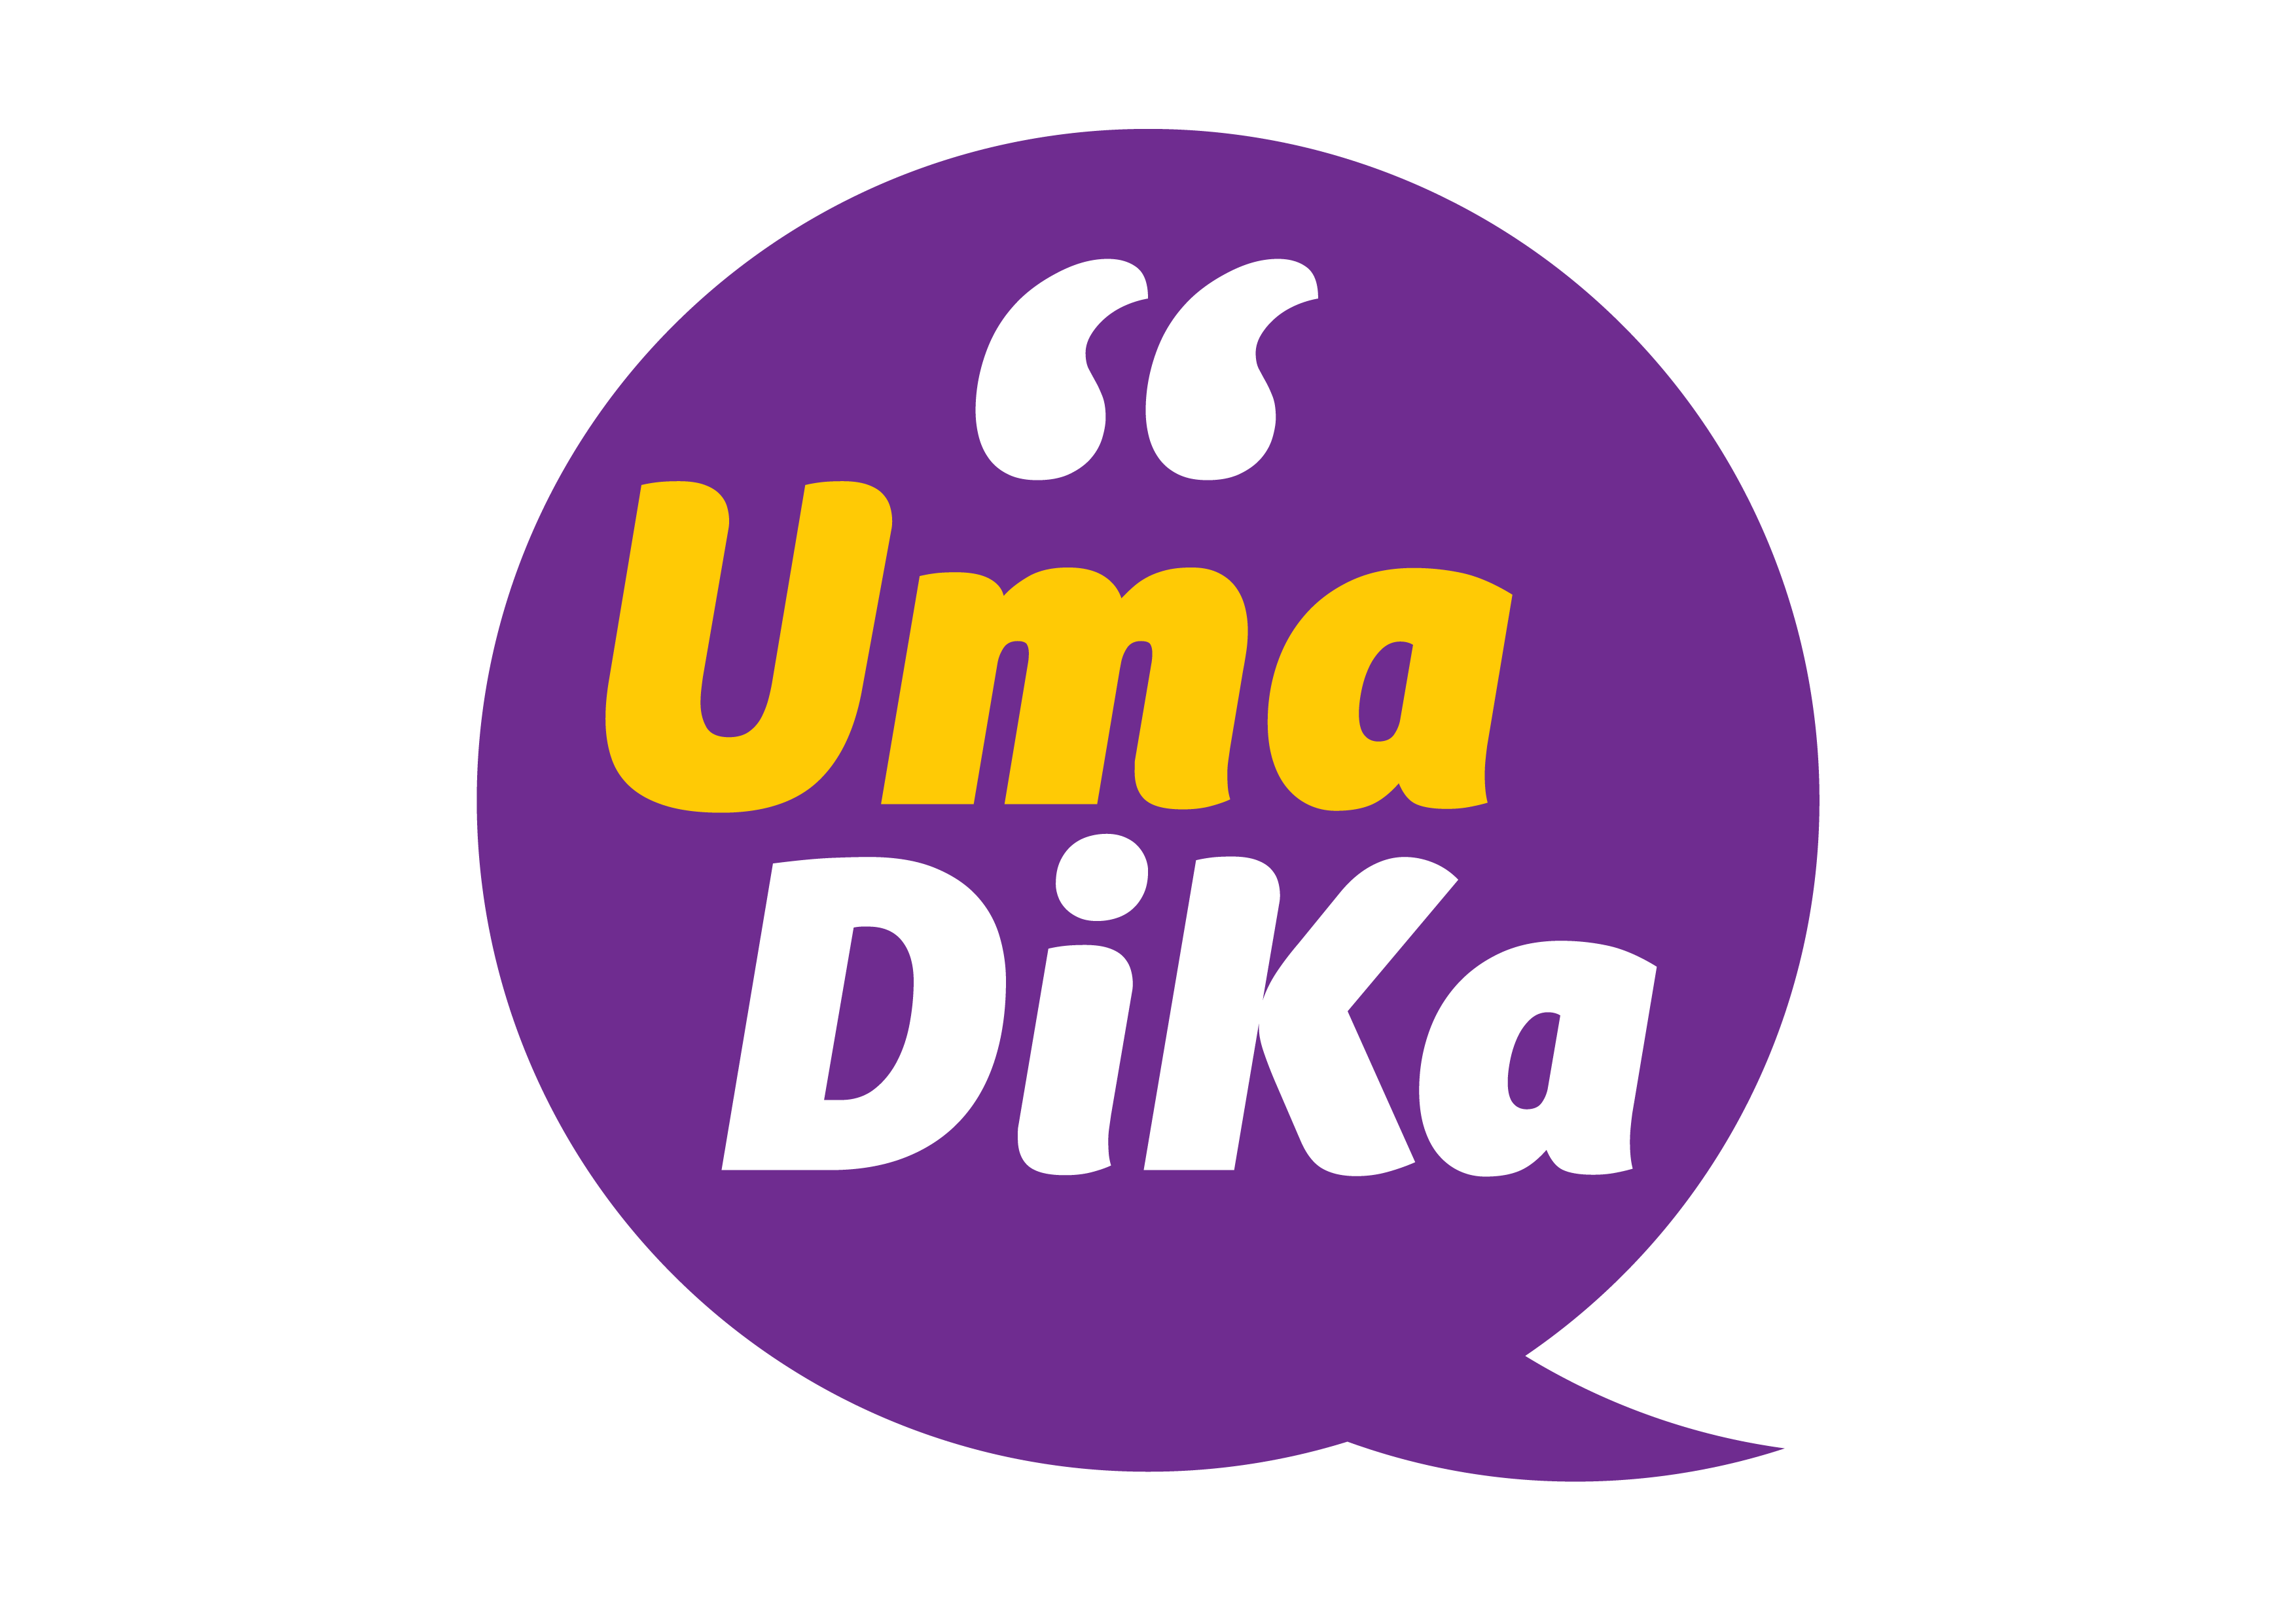 Fabio Uma Dika Sticker for iOS & Android